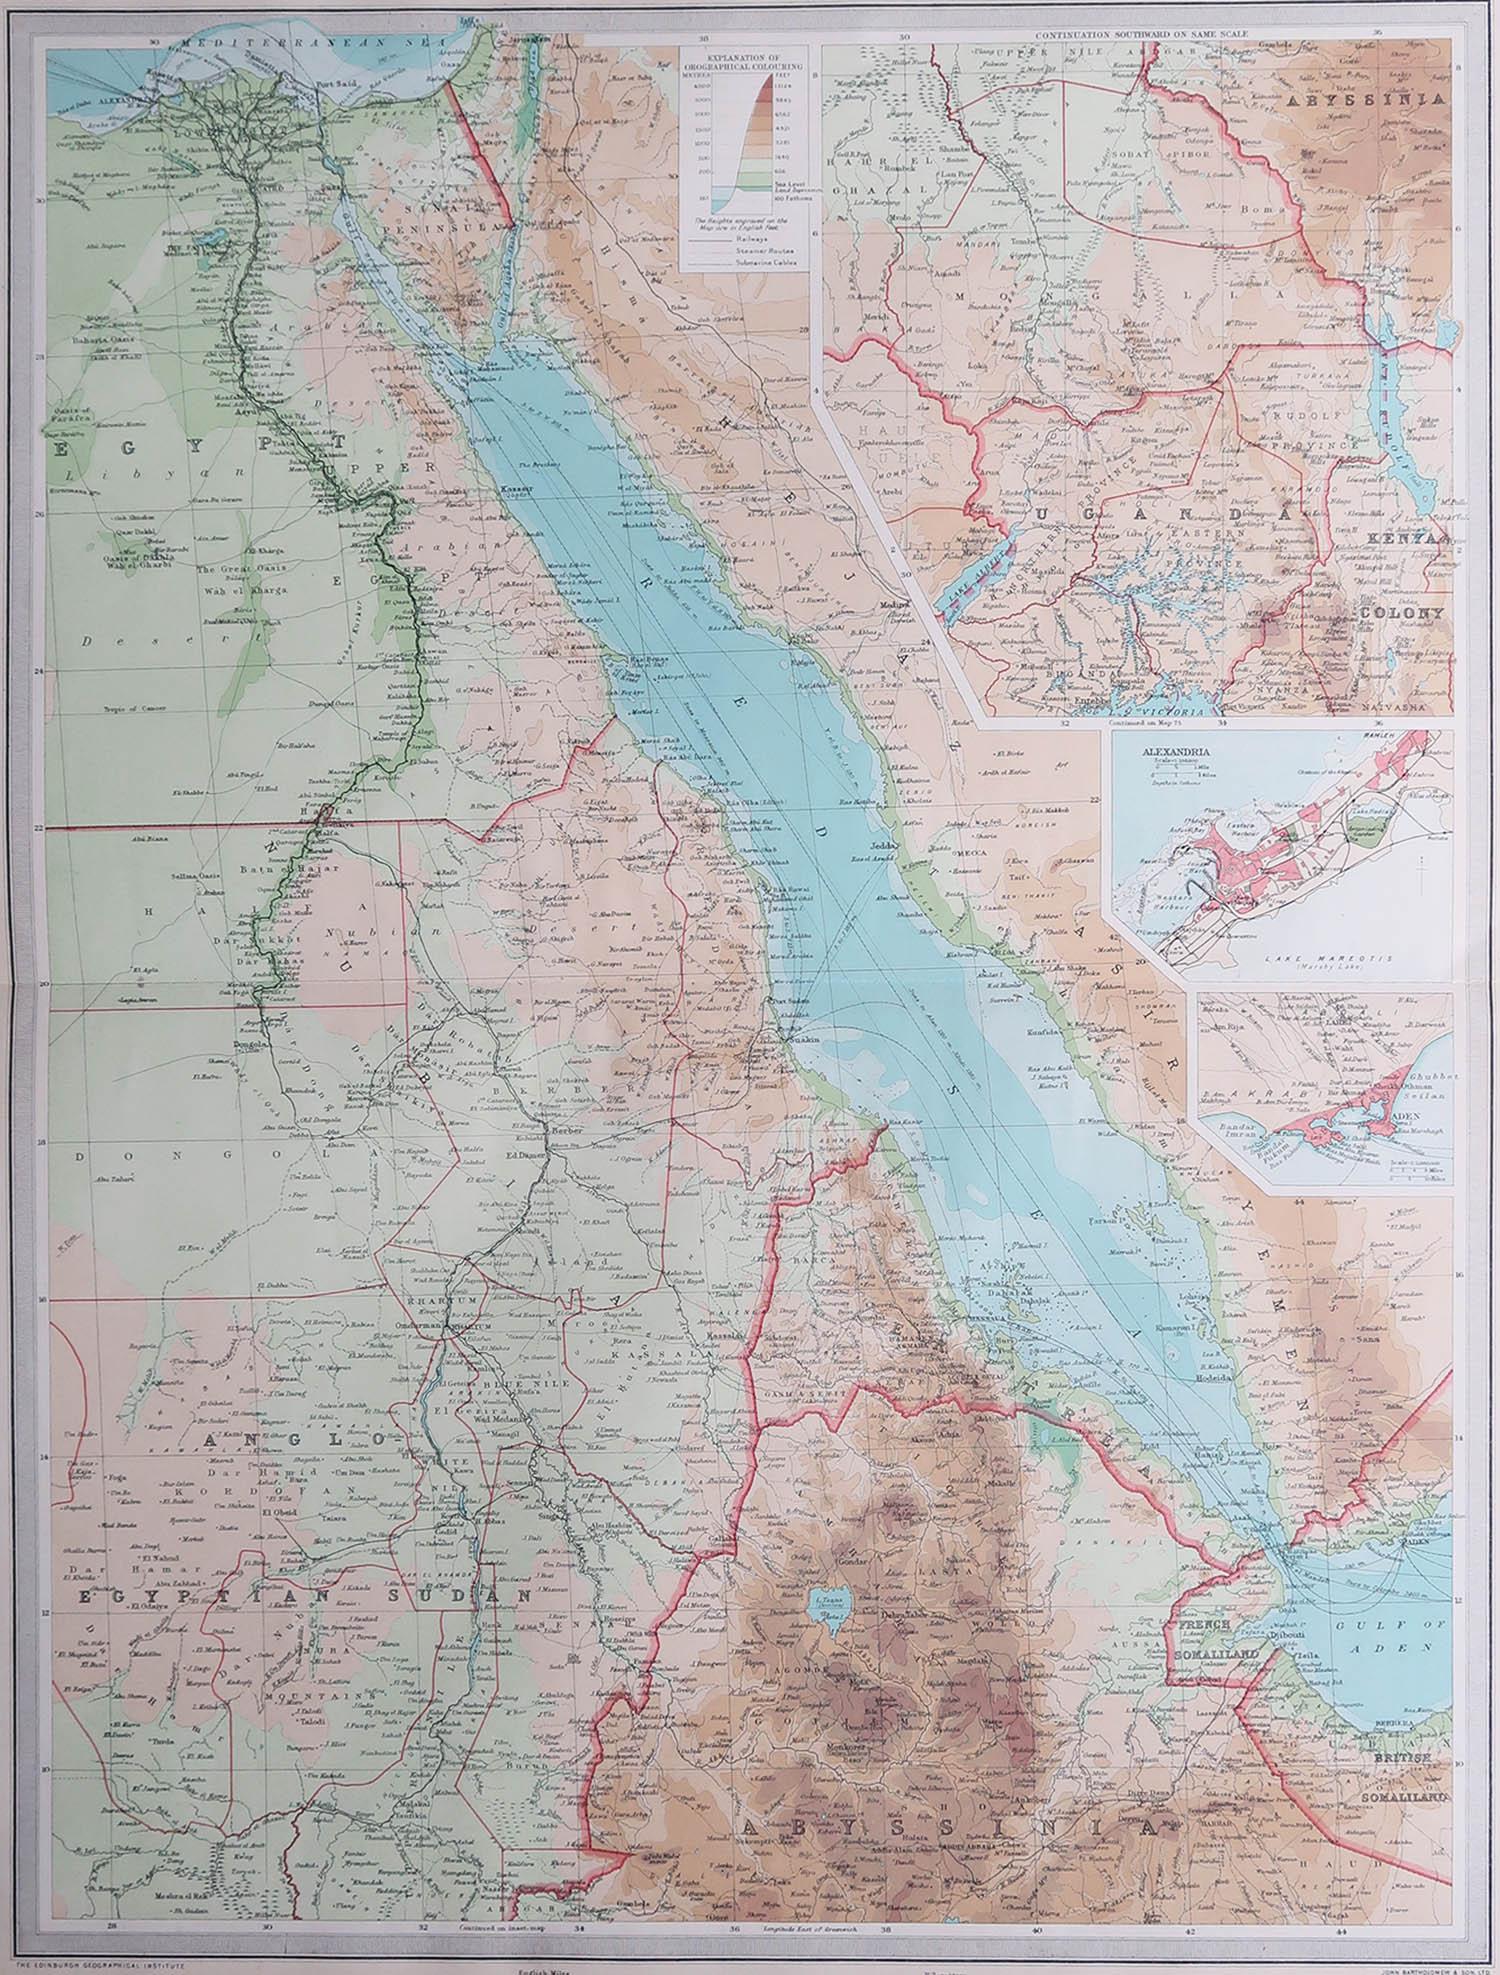 Große Karte von Ägypten

Ungerahmt

Original Farbe

Von John Bartholomew und Co. Geographisches Institut Edinburgh

Veröffentlicht, ca. 1920

Kostenloser Versand.
 